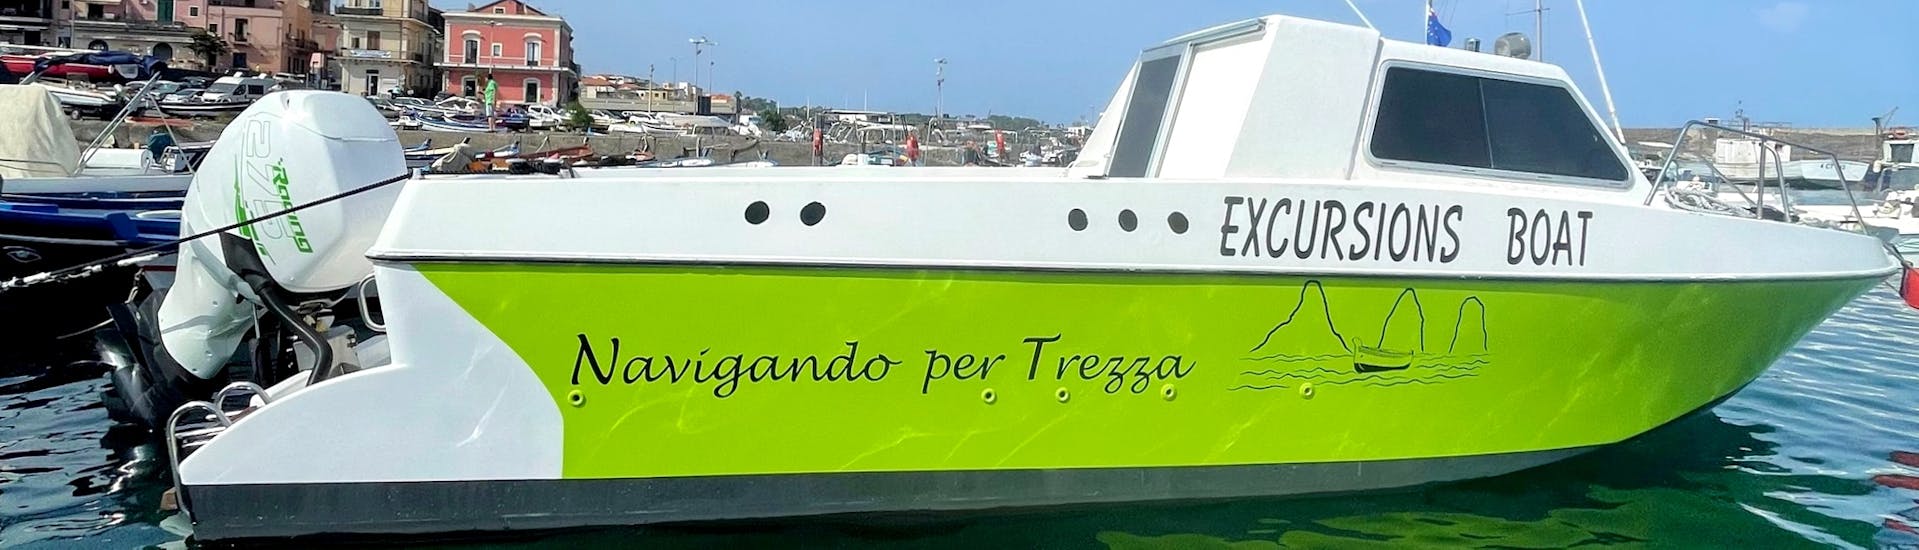 Das Boot von Navigando per Trezza vor dem Start der Bootstour ab Aci Trezza mit Delfinbeobachtung bei Sonnenuntergang.